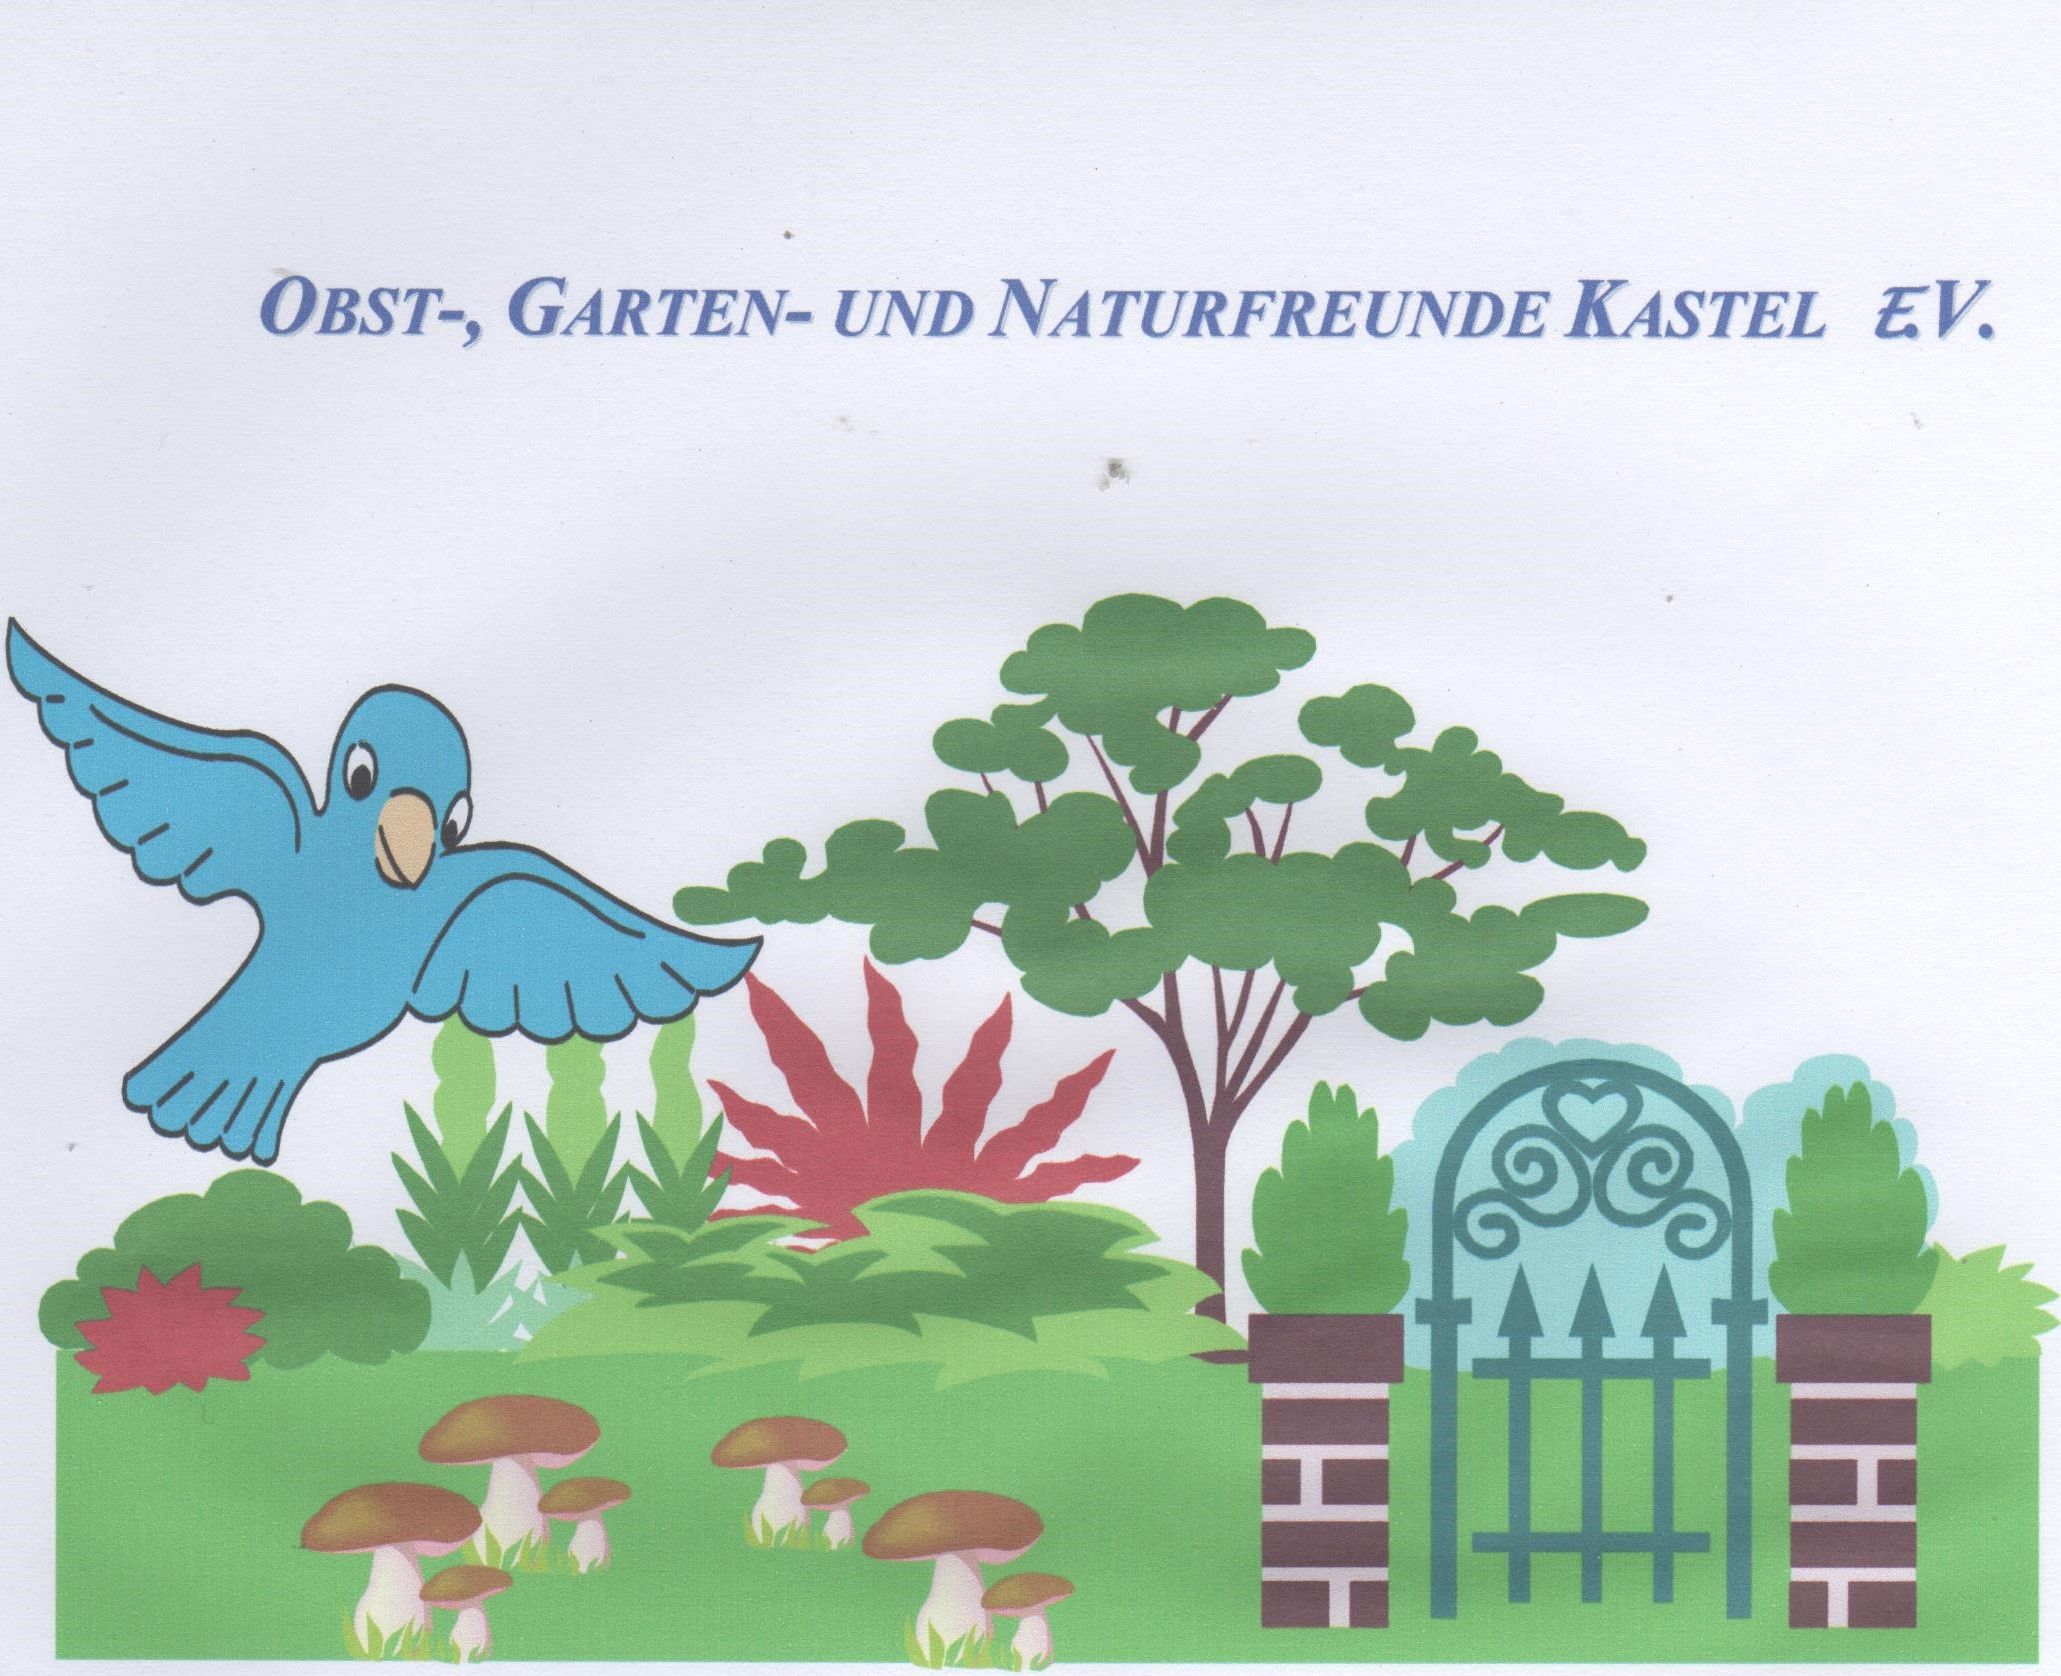 Profilbild des Vereins Obst-, Garten- und Naturfreunde Kastel e.V.